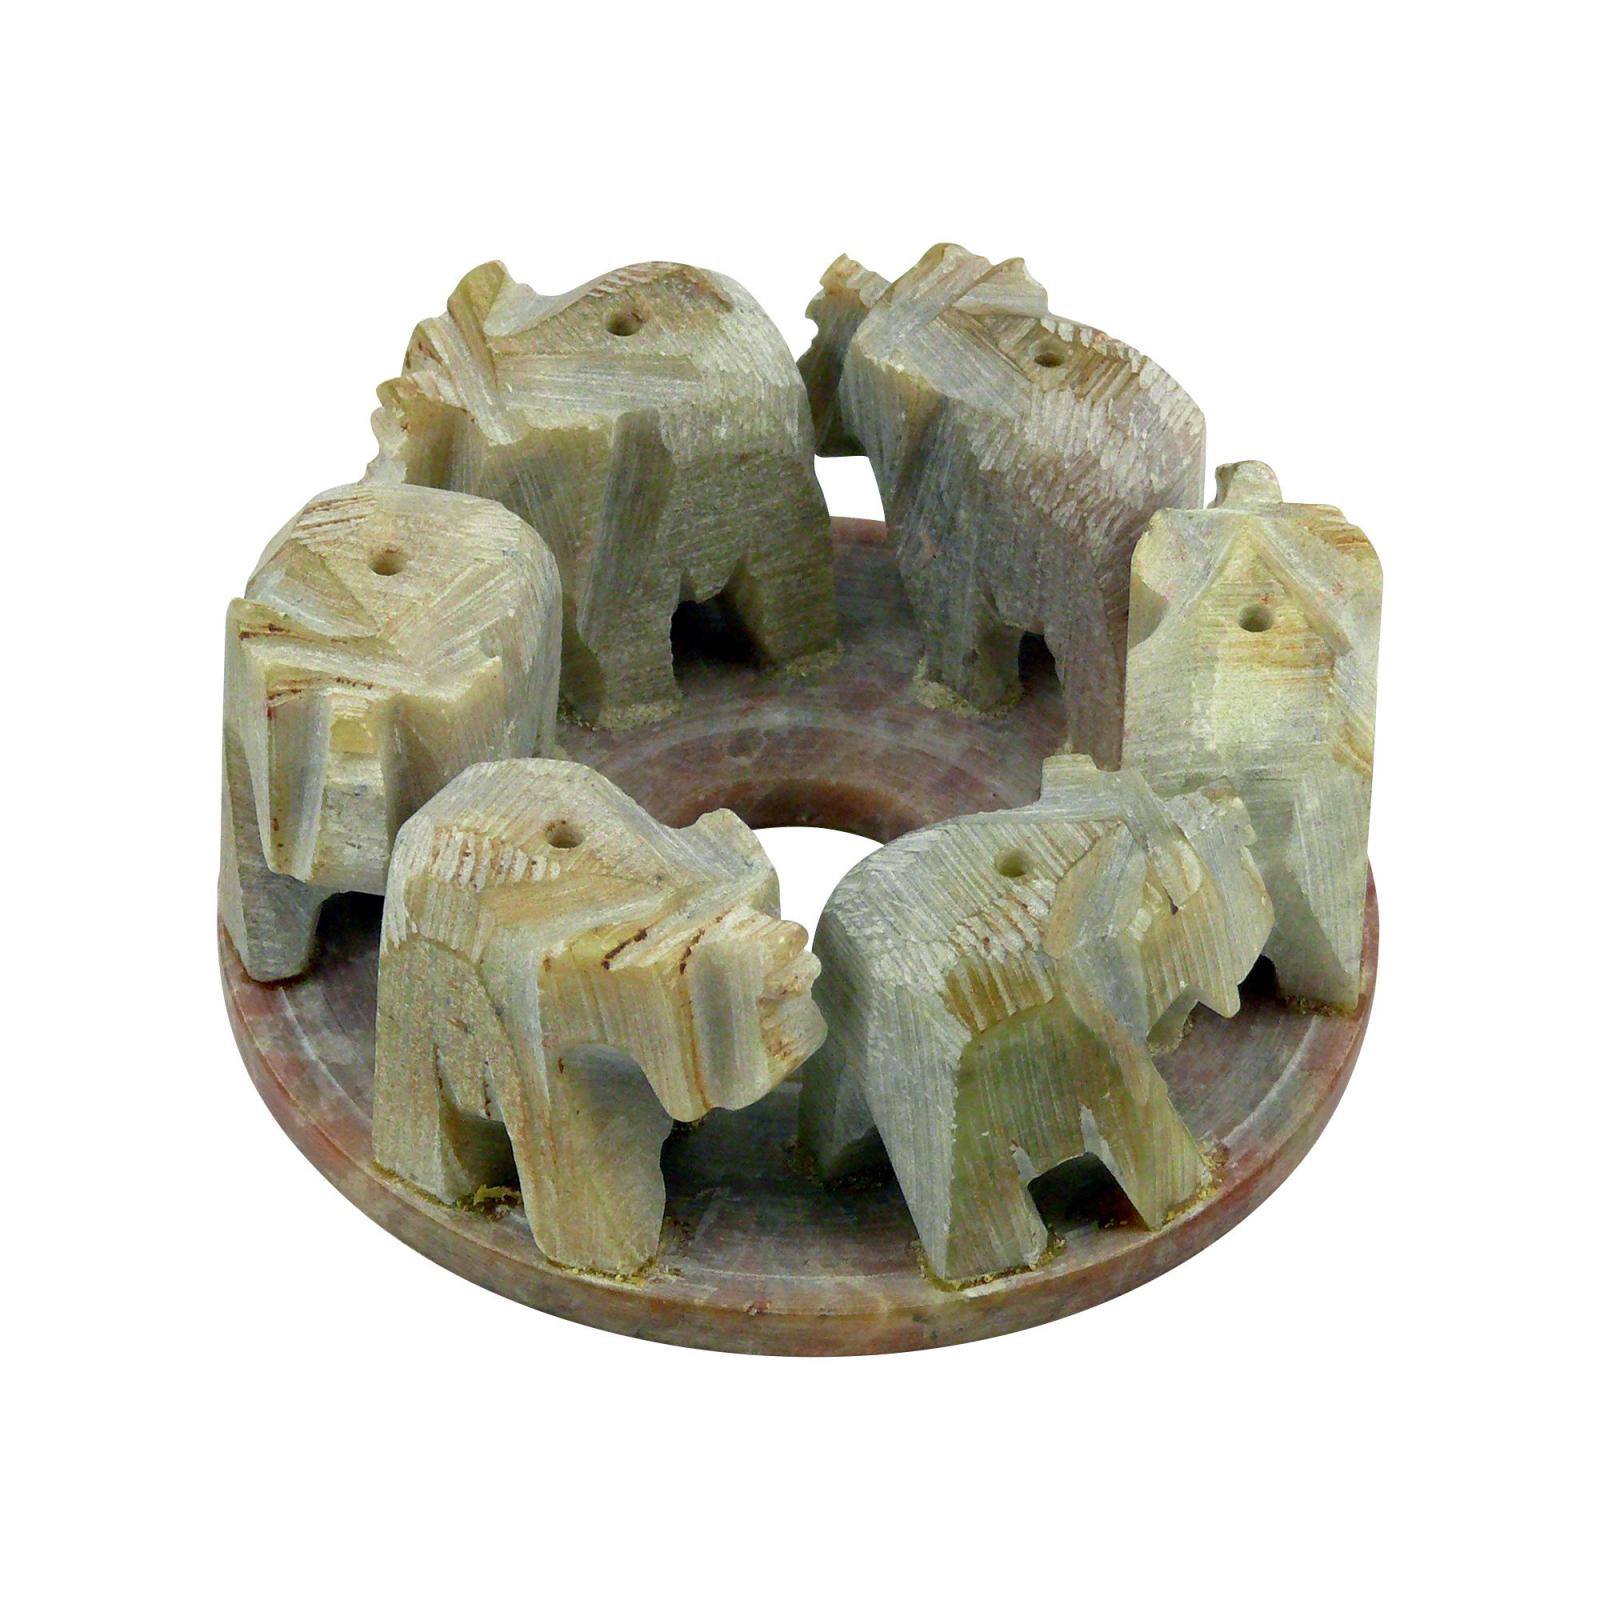 Shanti Stojánek kamenný na vonné tyčinky, sloni v kruhu 1 ks